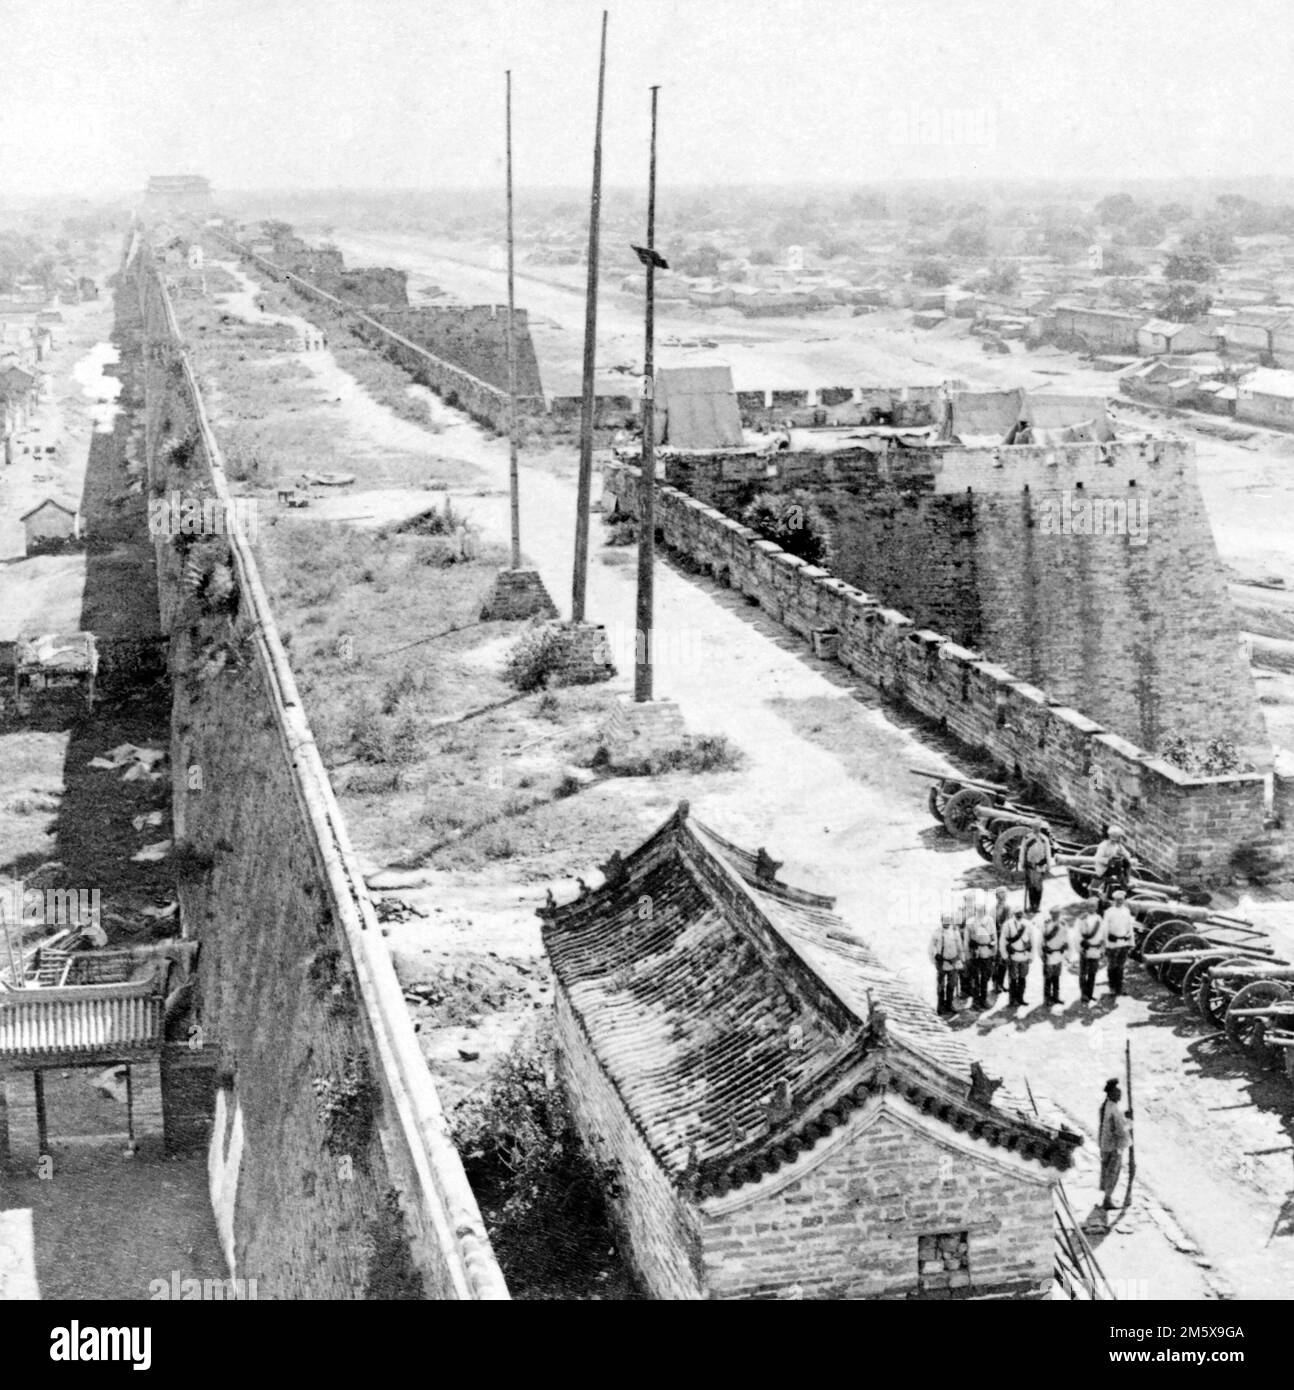 Boxer-Rebellion. Die Mauer von Peking, bewacht von der russischen Artillerie. Foto: B.W. Kilburn Company, c. 1900 Stockfoto